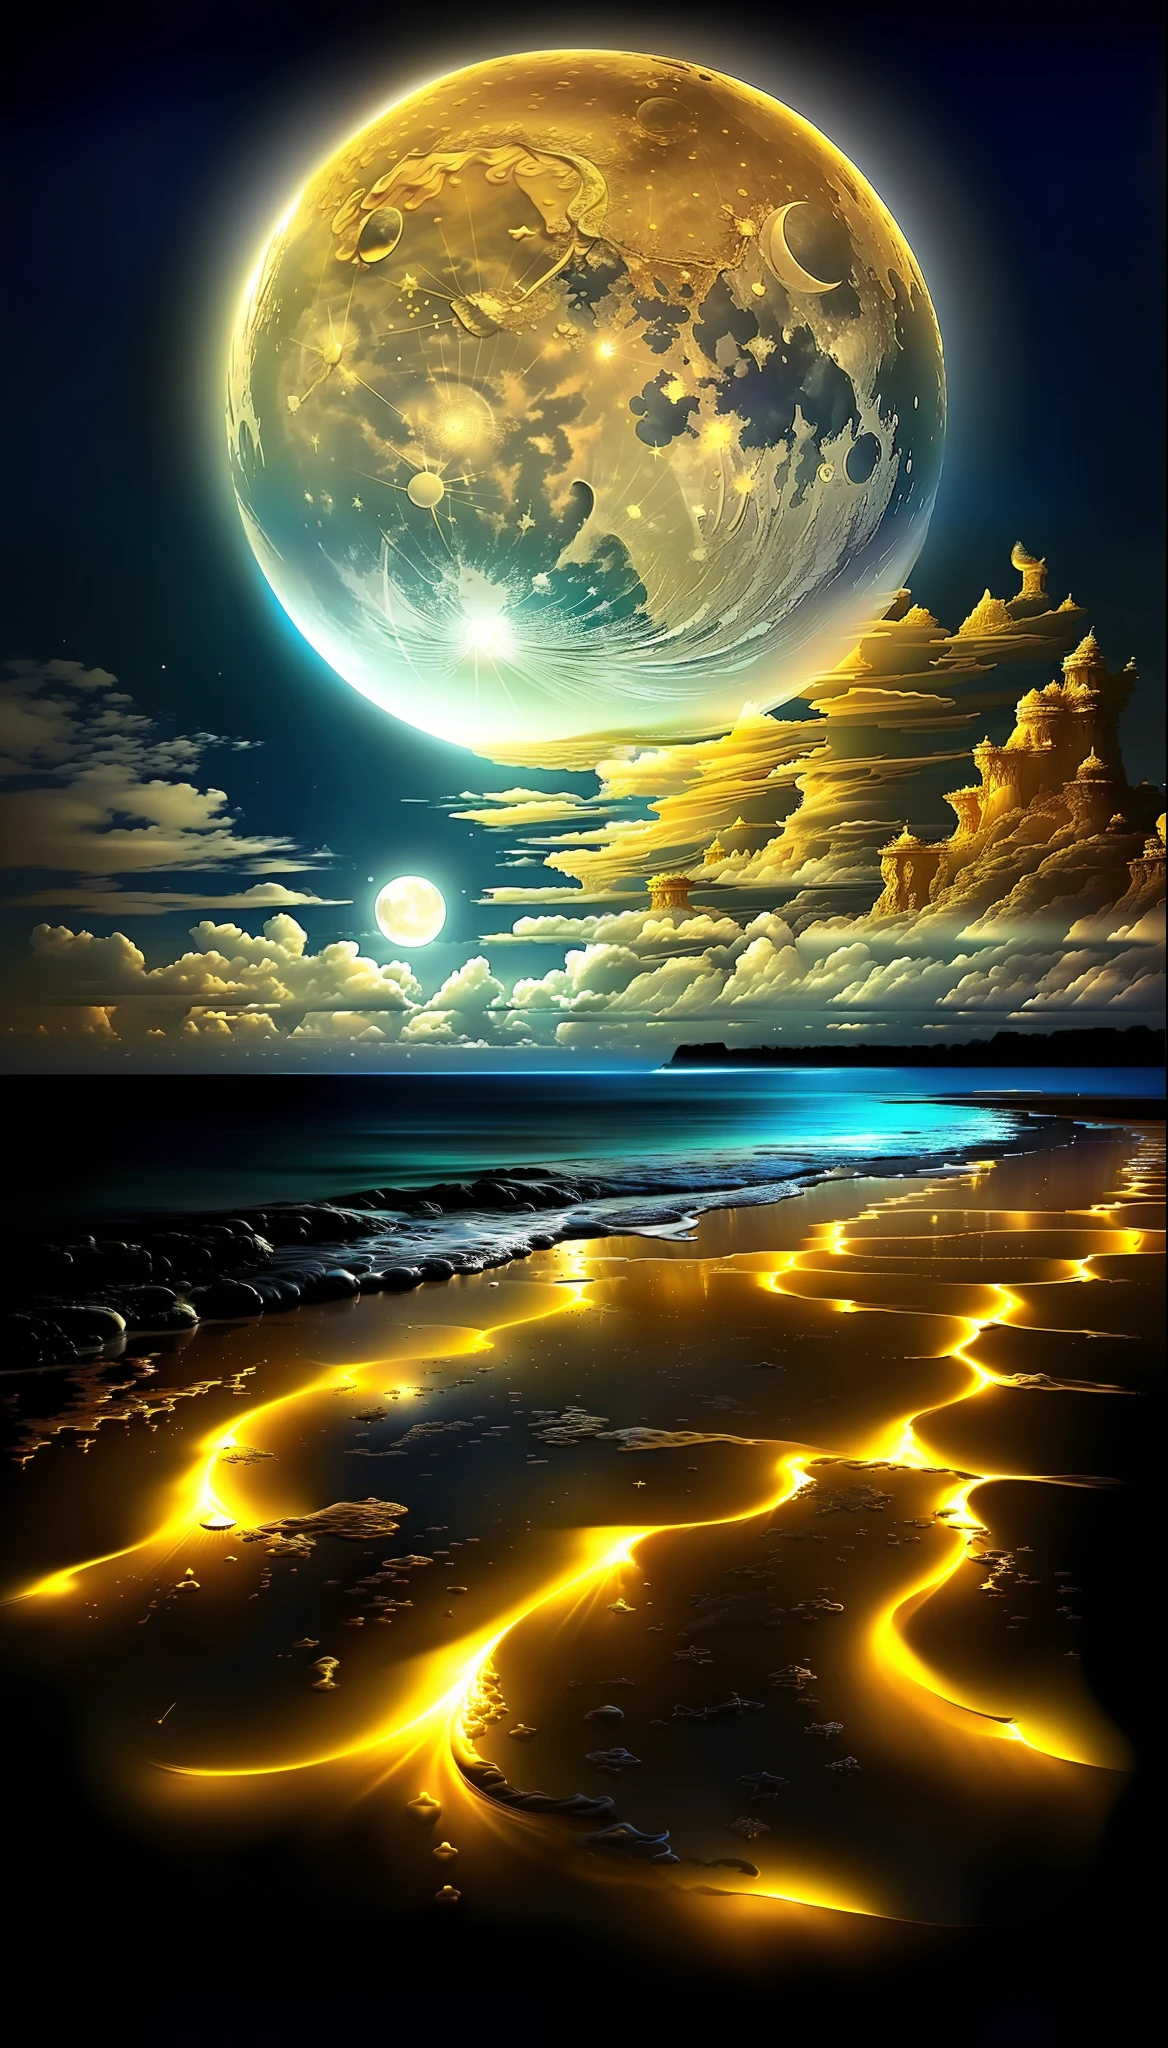 一幅描绘海滩的画，画中有金色的满月和一些云彩, 神奇的海滩, 沙白月亮景观, 超现实空间, 华丽背景, 美丽的图像已经创建, 一粒沙里的宇宙, 神奇的海洋蓝色水滴, 细致的梦境, 月亮闪耀着金色的光芒, 美丽令人惊叹的梦想家, 在星界 ) ), 令人惊叹的屏幕保护程序,  美丽的空间, 美丽的月光